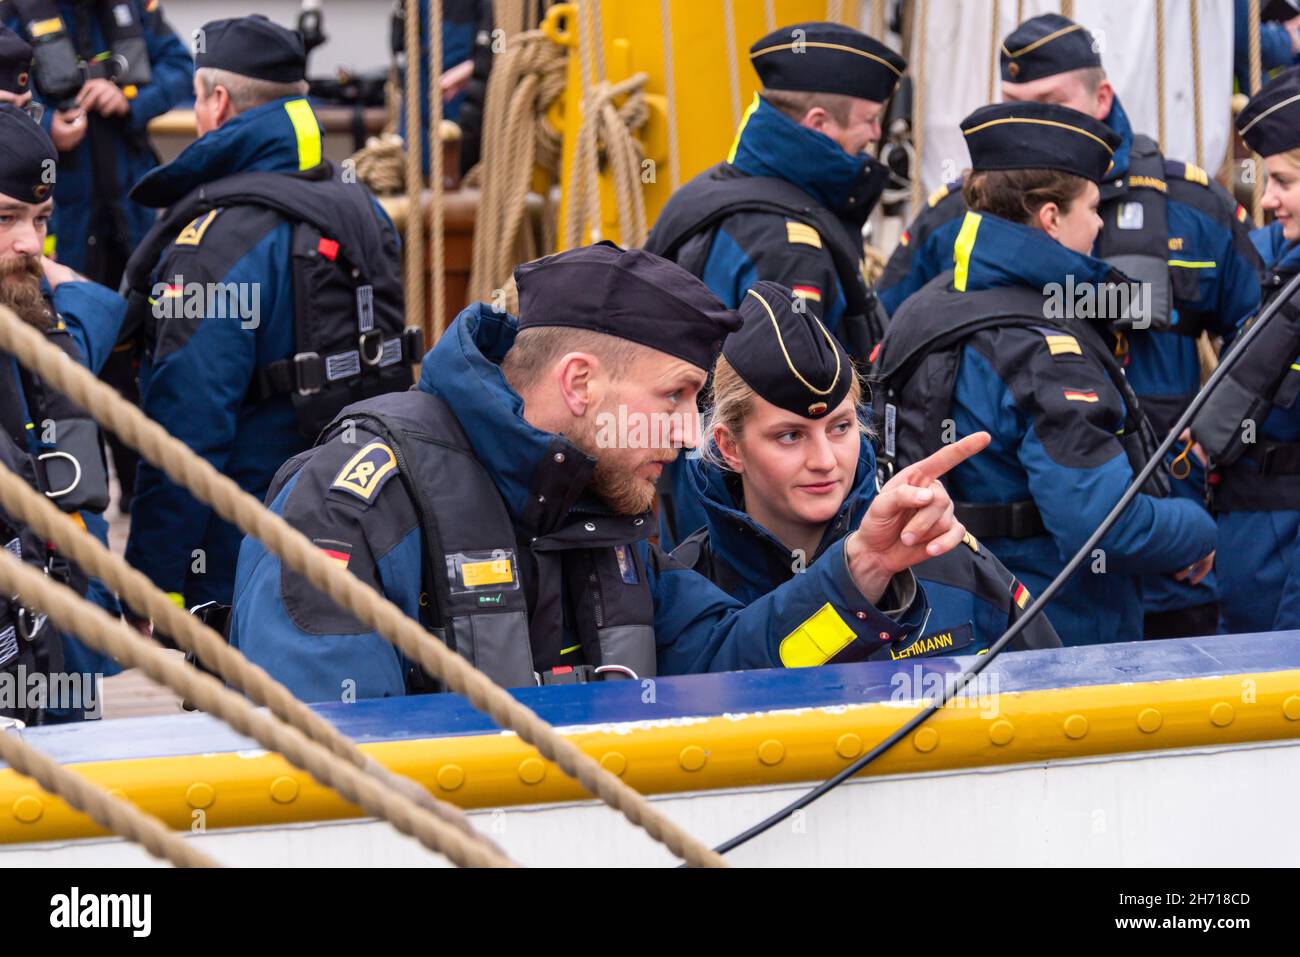 Die Besatzung des Segelschulschiffes Gorch Fock der Deutschen Marine angetreten zum Auftakt einer Ausbildungsfahrt Stock Photo